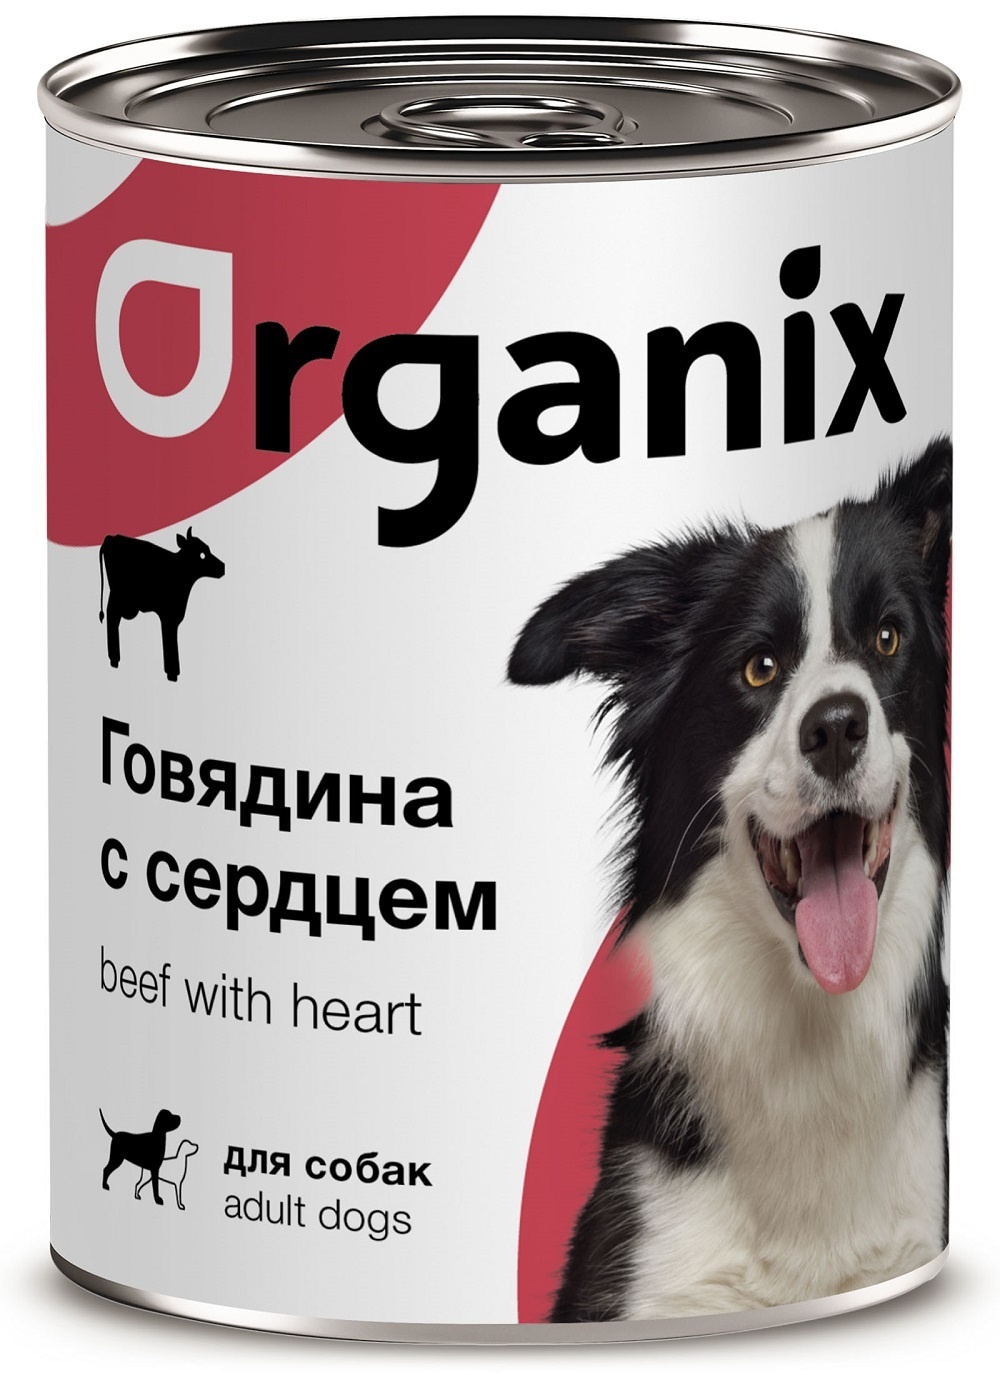 Organix консервы Organix консервы для собак, с говядиной и сердцем (410 г) organix консервы organix консервы с говядиной и рубцом для собак 410 г